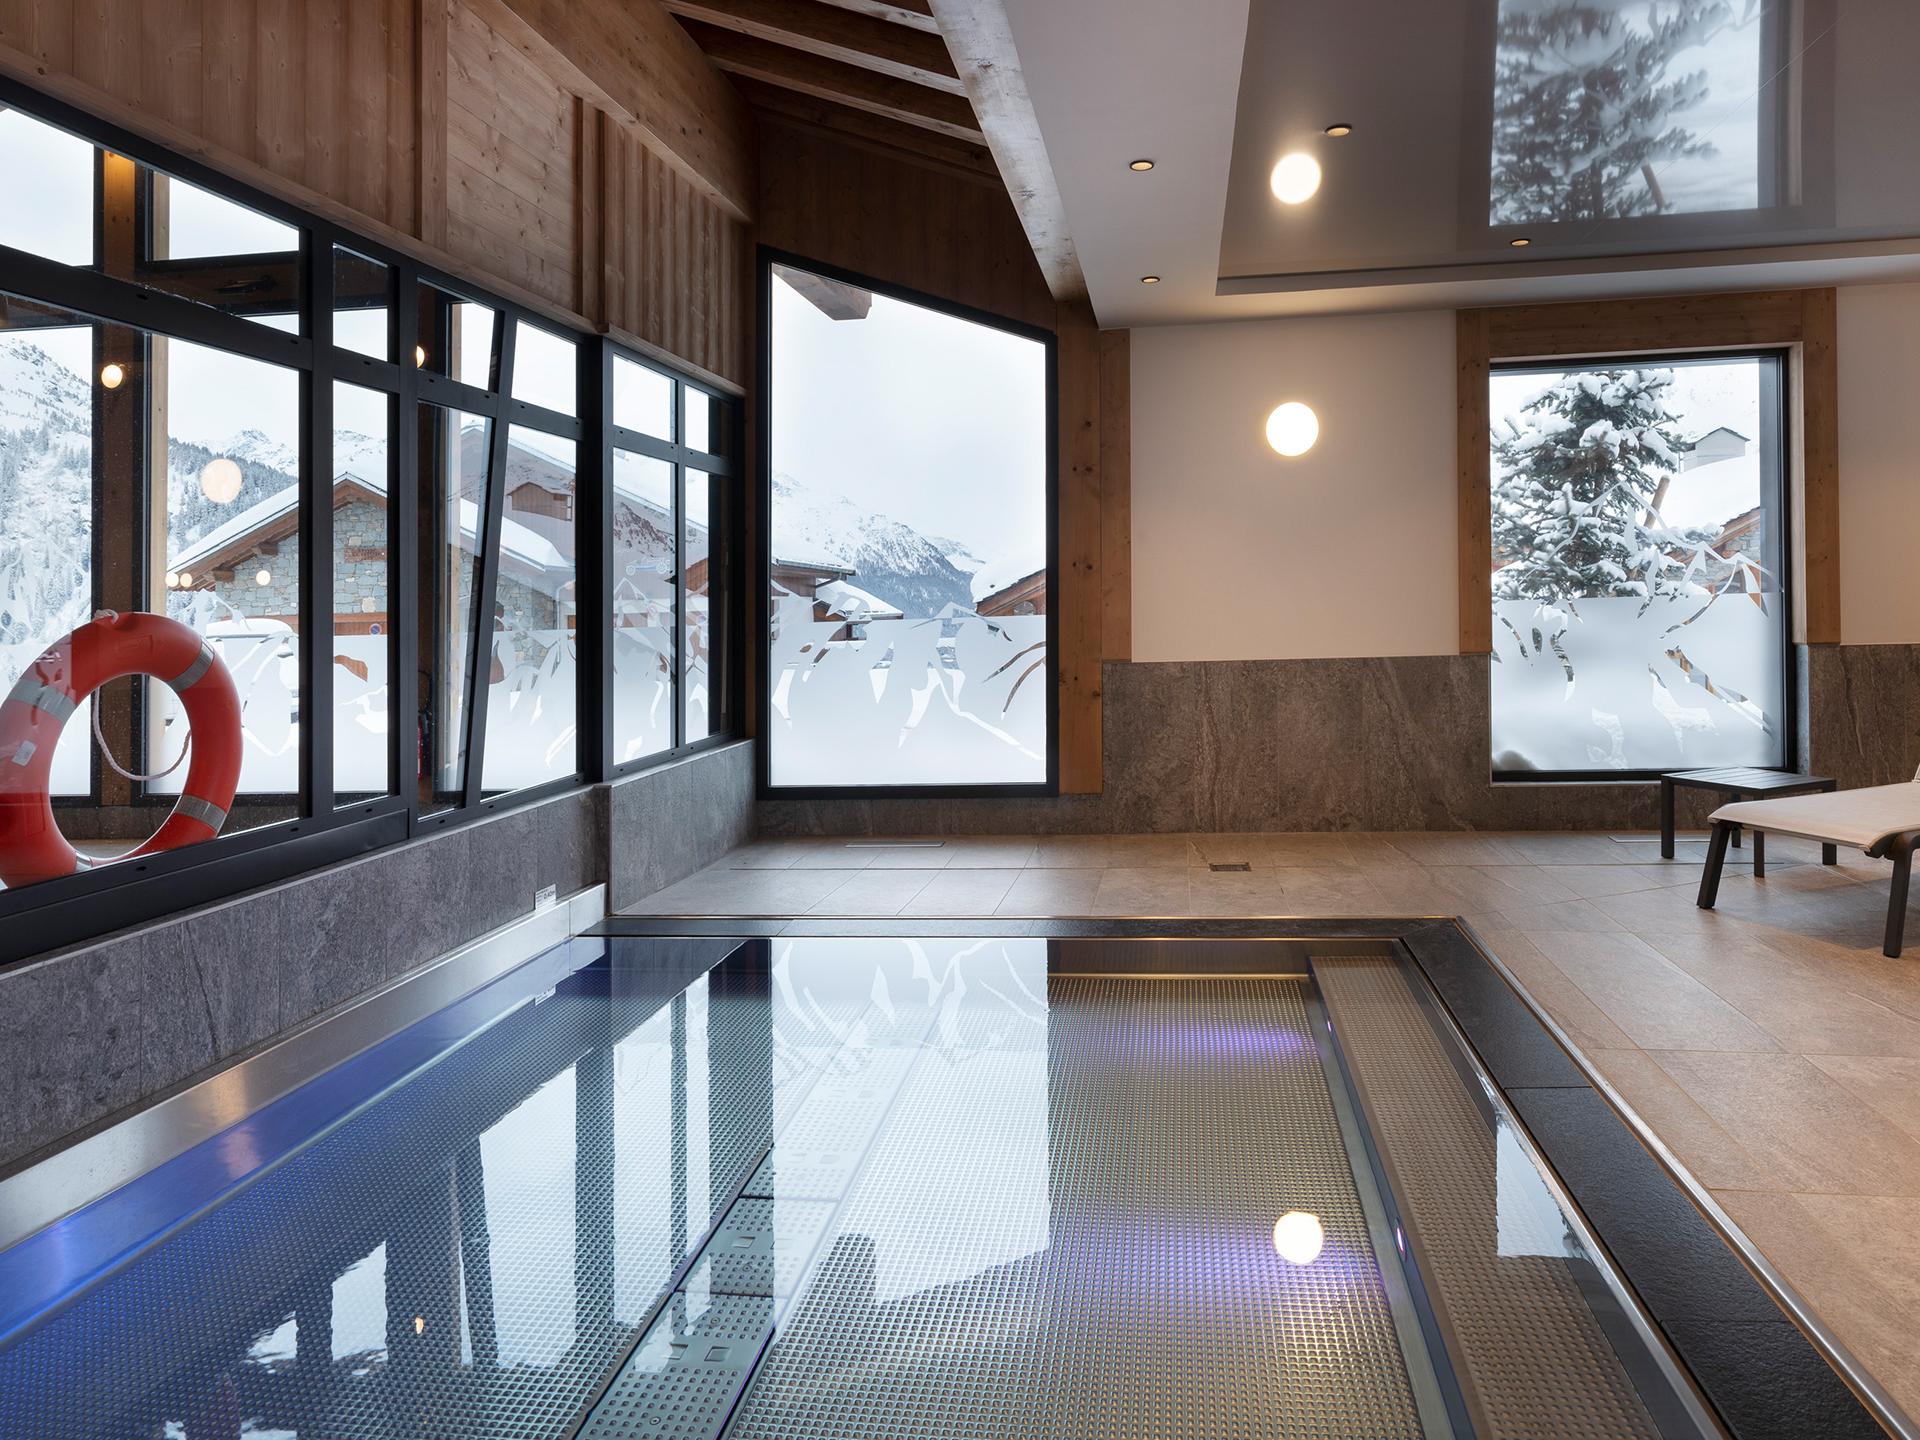 Le bain nordique de l'hôtel et résidence Alpen Lodge de La Rosière